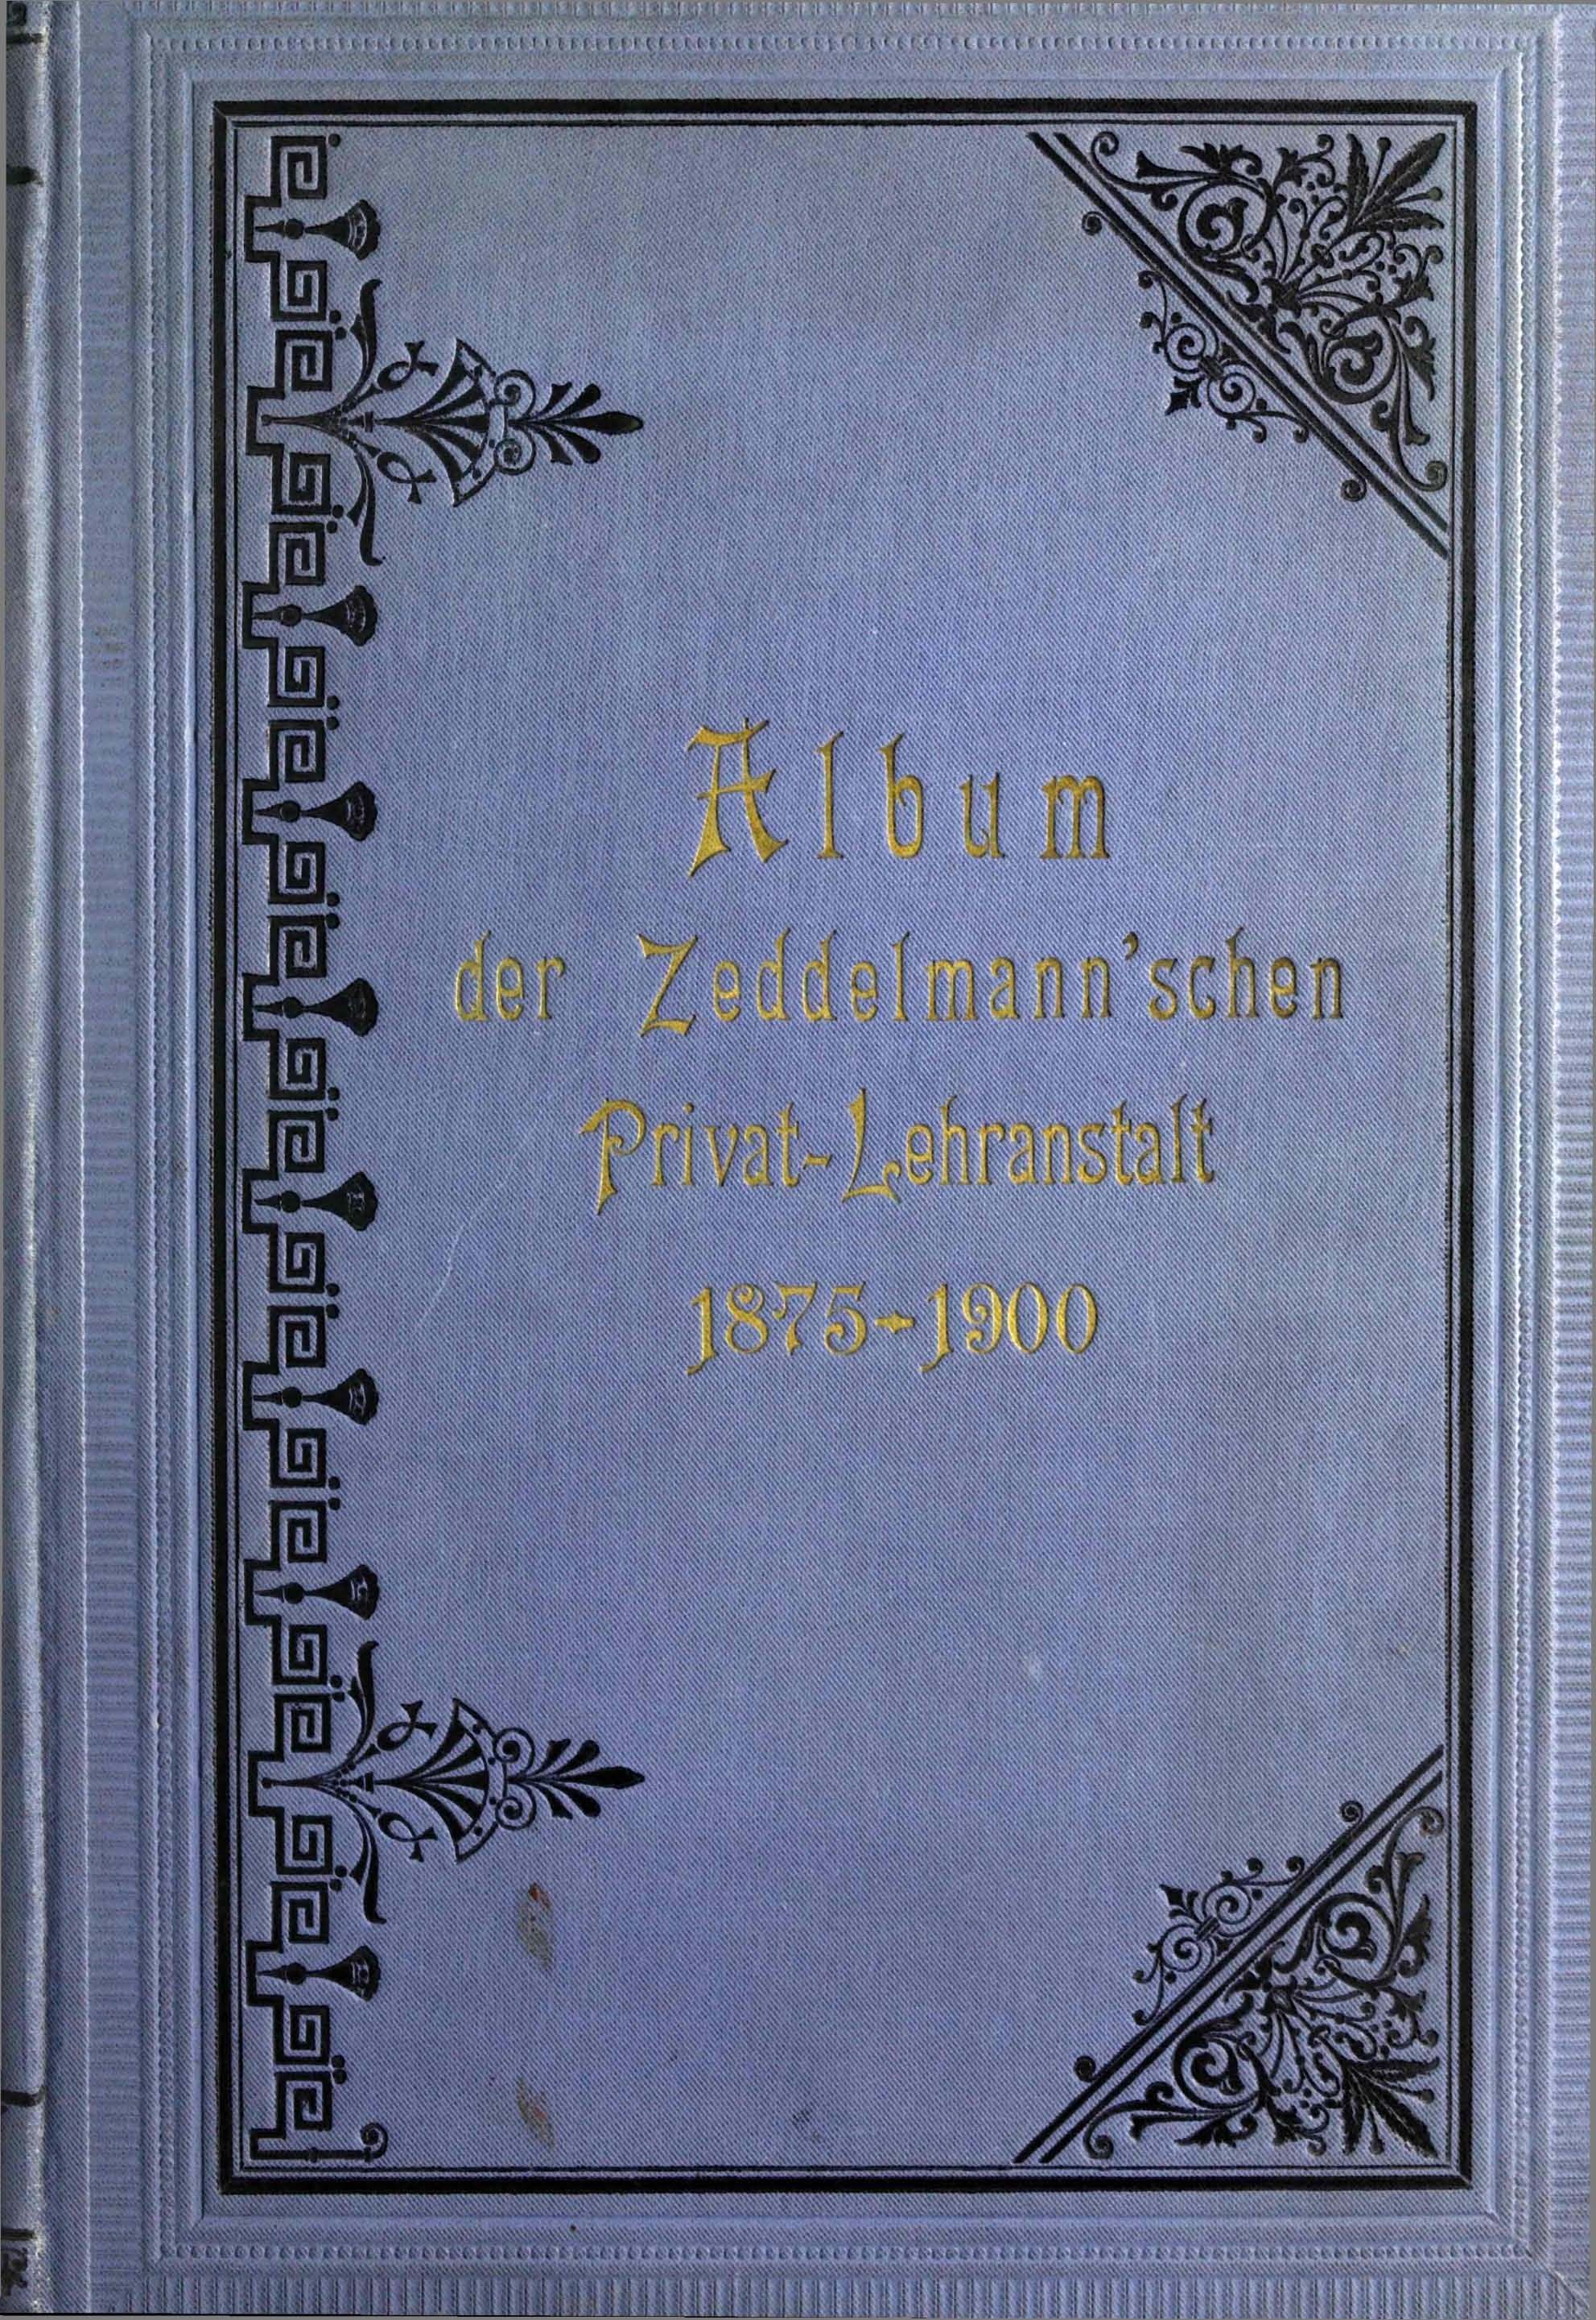 Die Zeddelmannsche Privat-Lehranstalt (1900) | 1. Vorderdeckel